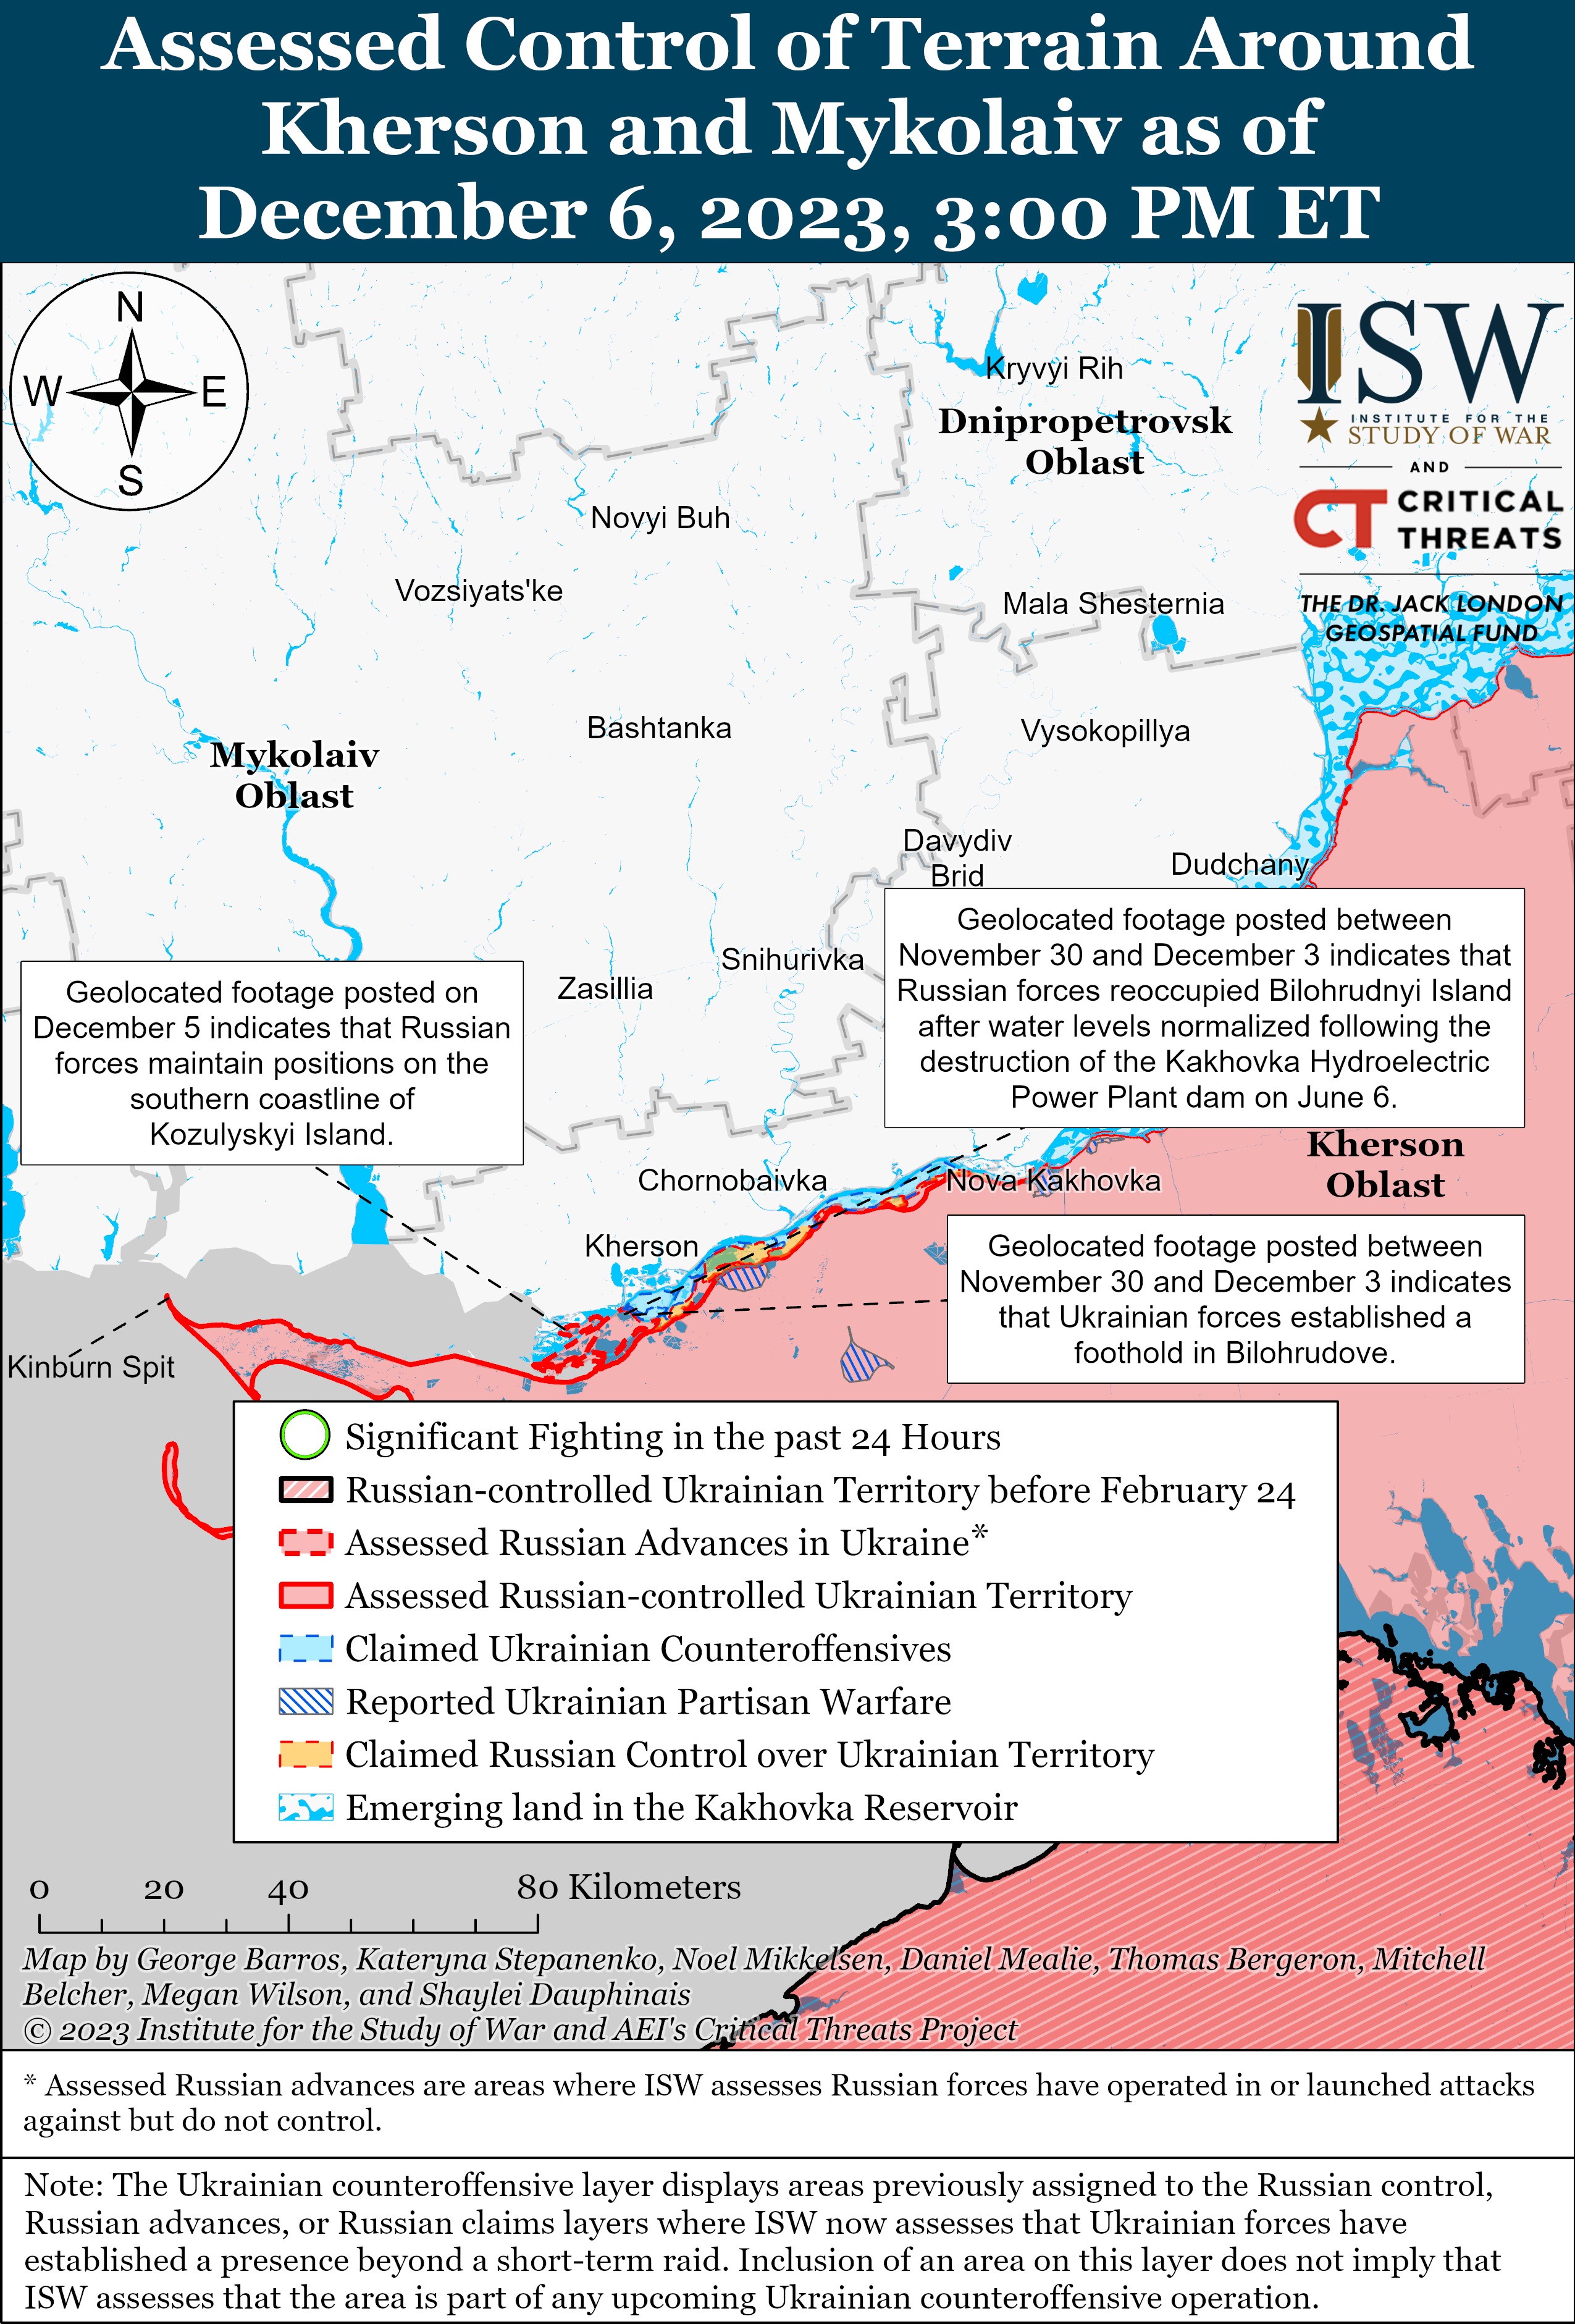 ВСУ проводят наземную операцию на левом берегу Херсонской области: карты ISW